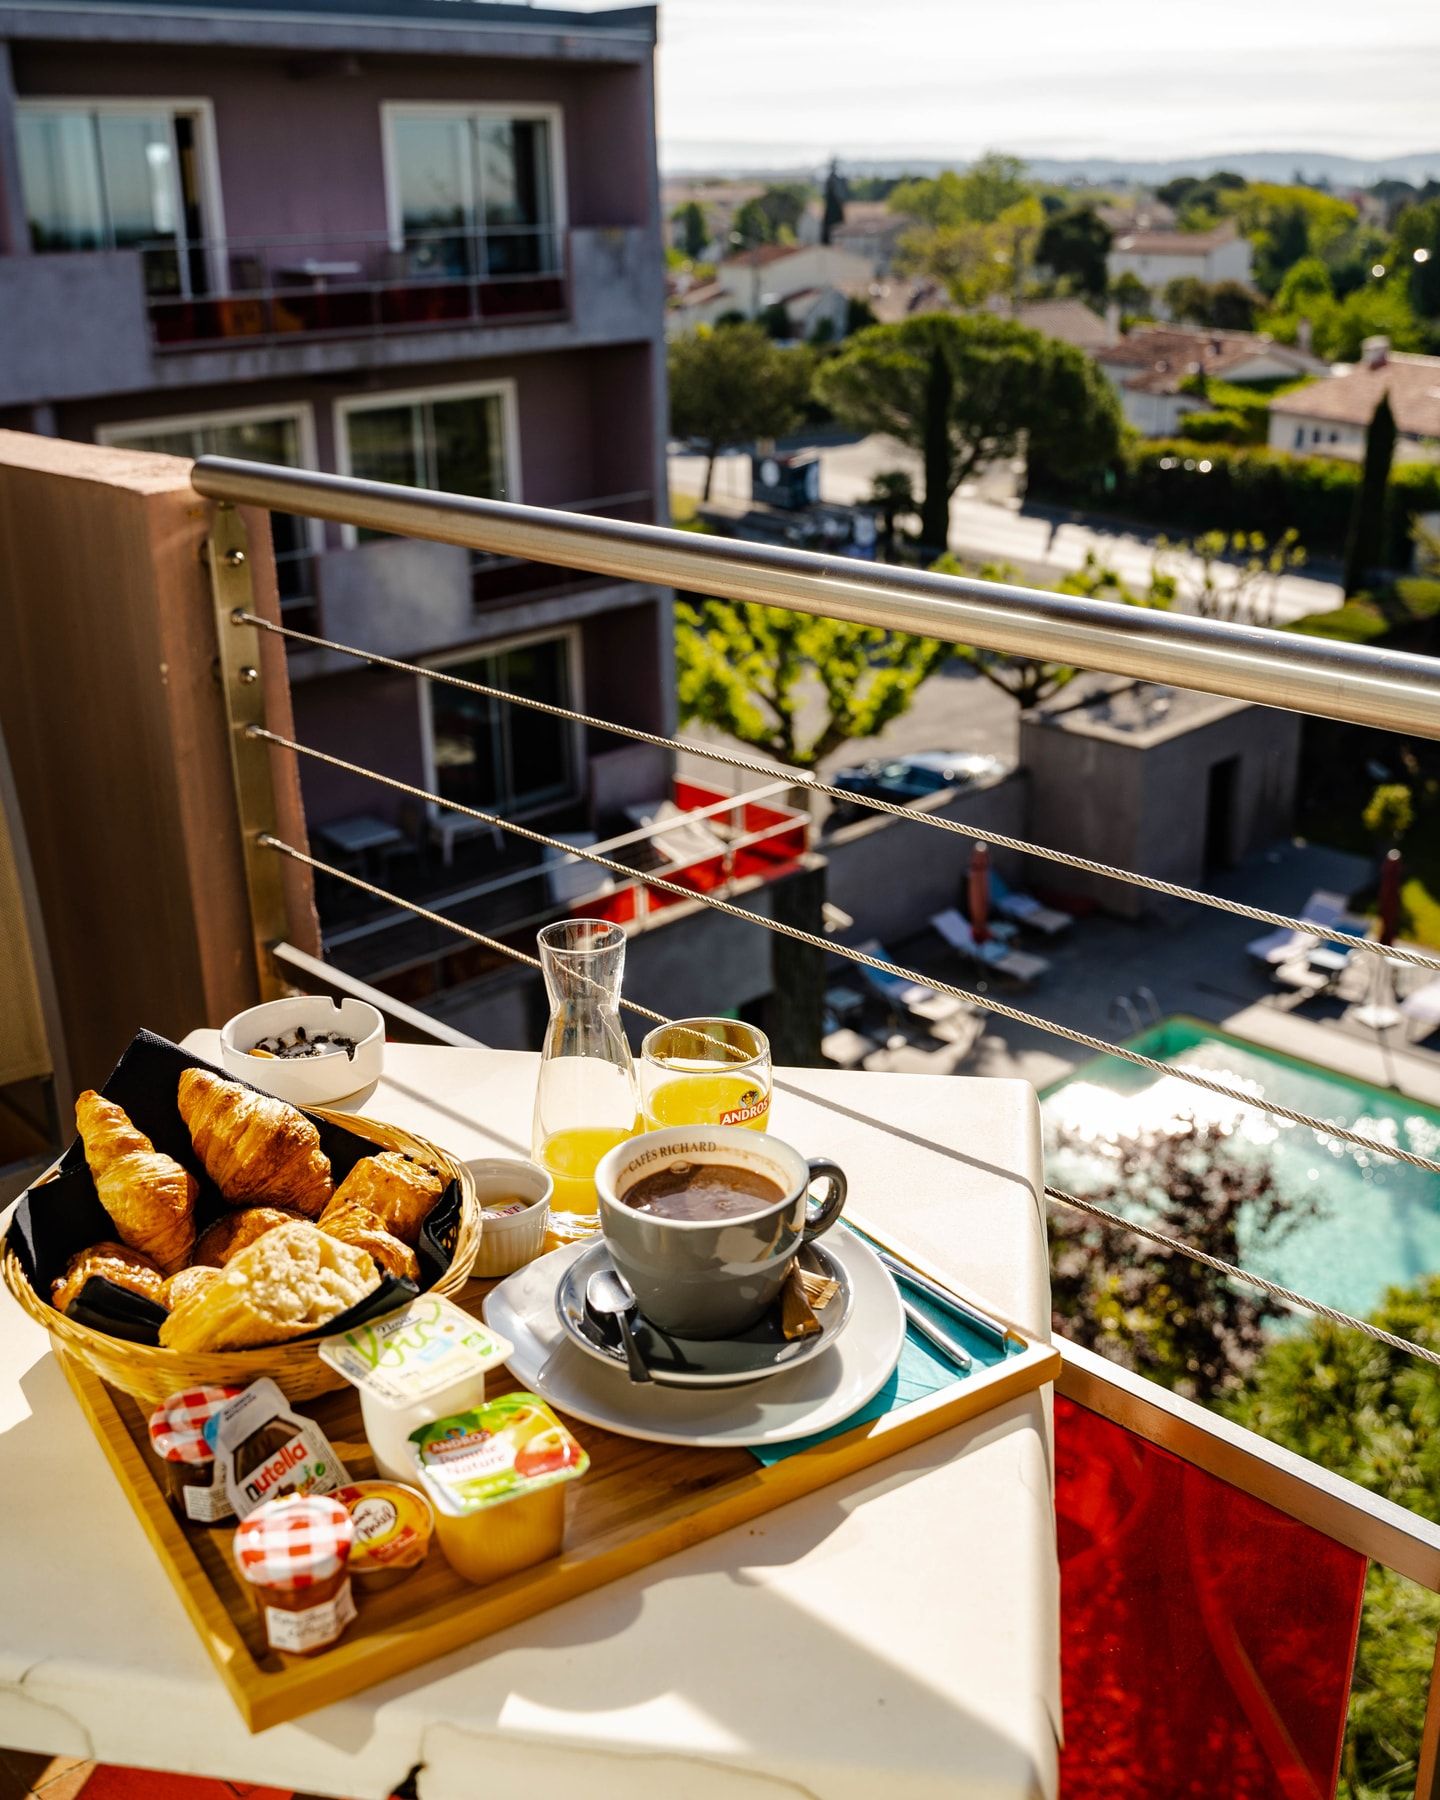 petit déjeuner sur terrasse avec vue sur la piscine - safari hôtel carpentras